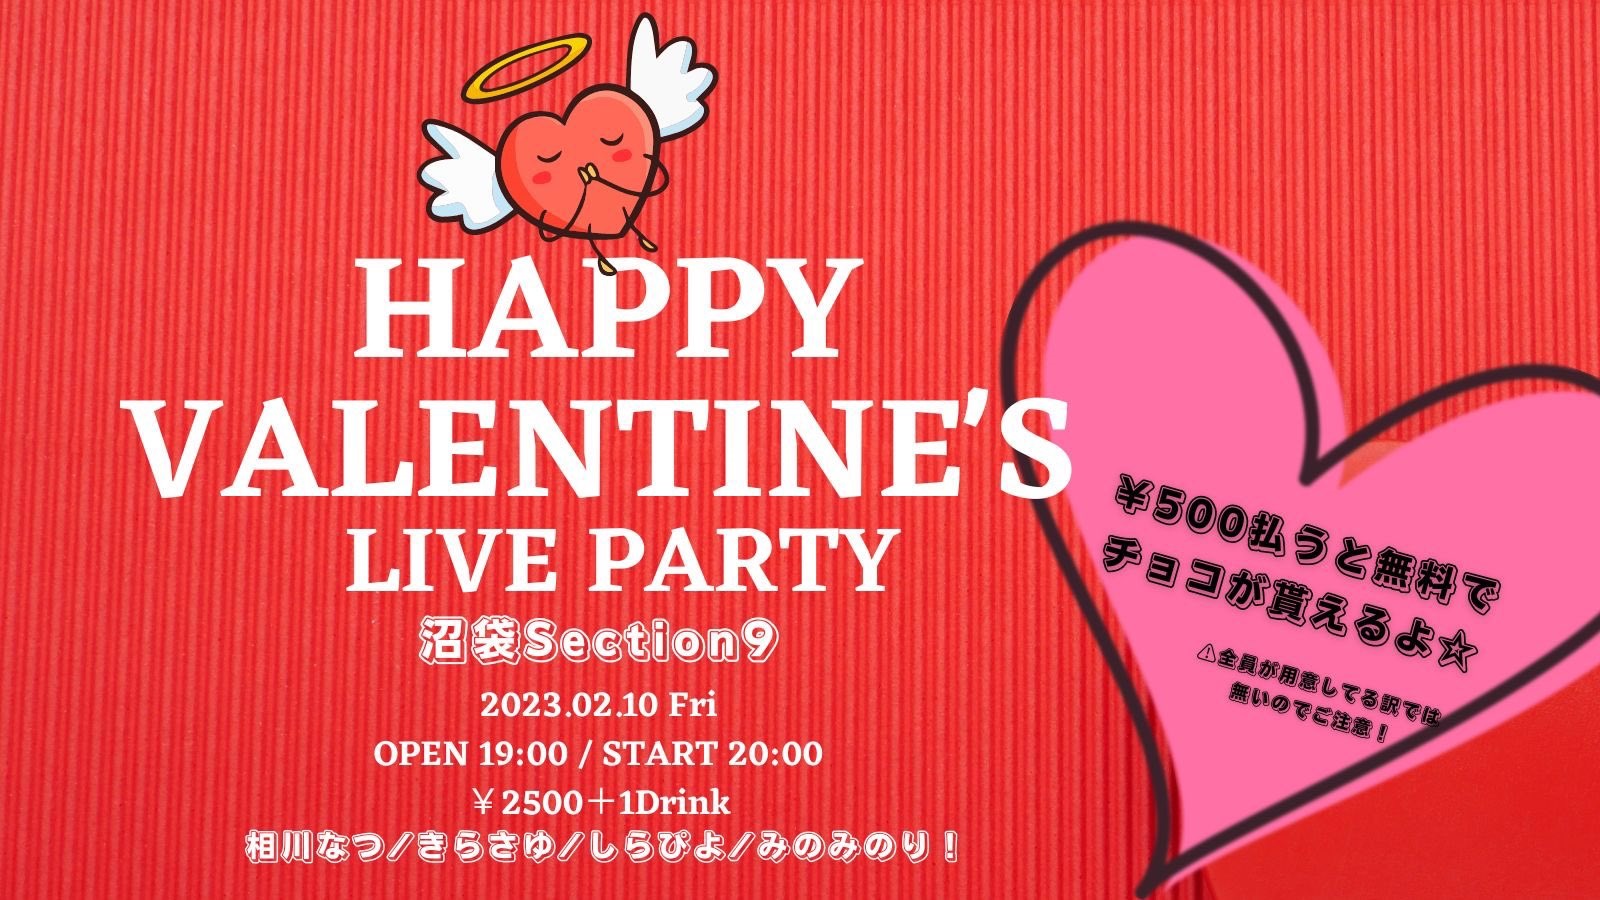 2月10日(金)「HAPPY VALENTINE'S LIVE PARTY」に出演します!!!